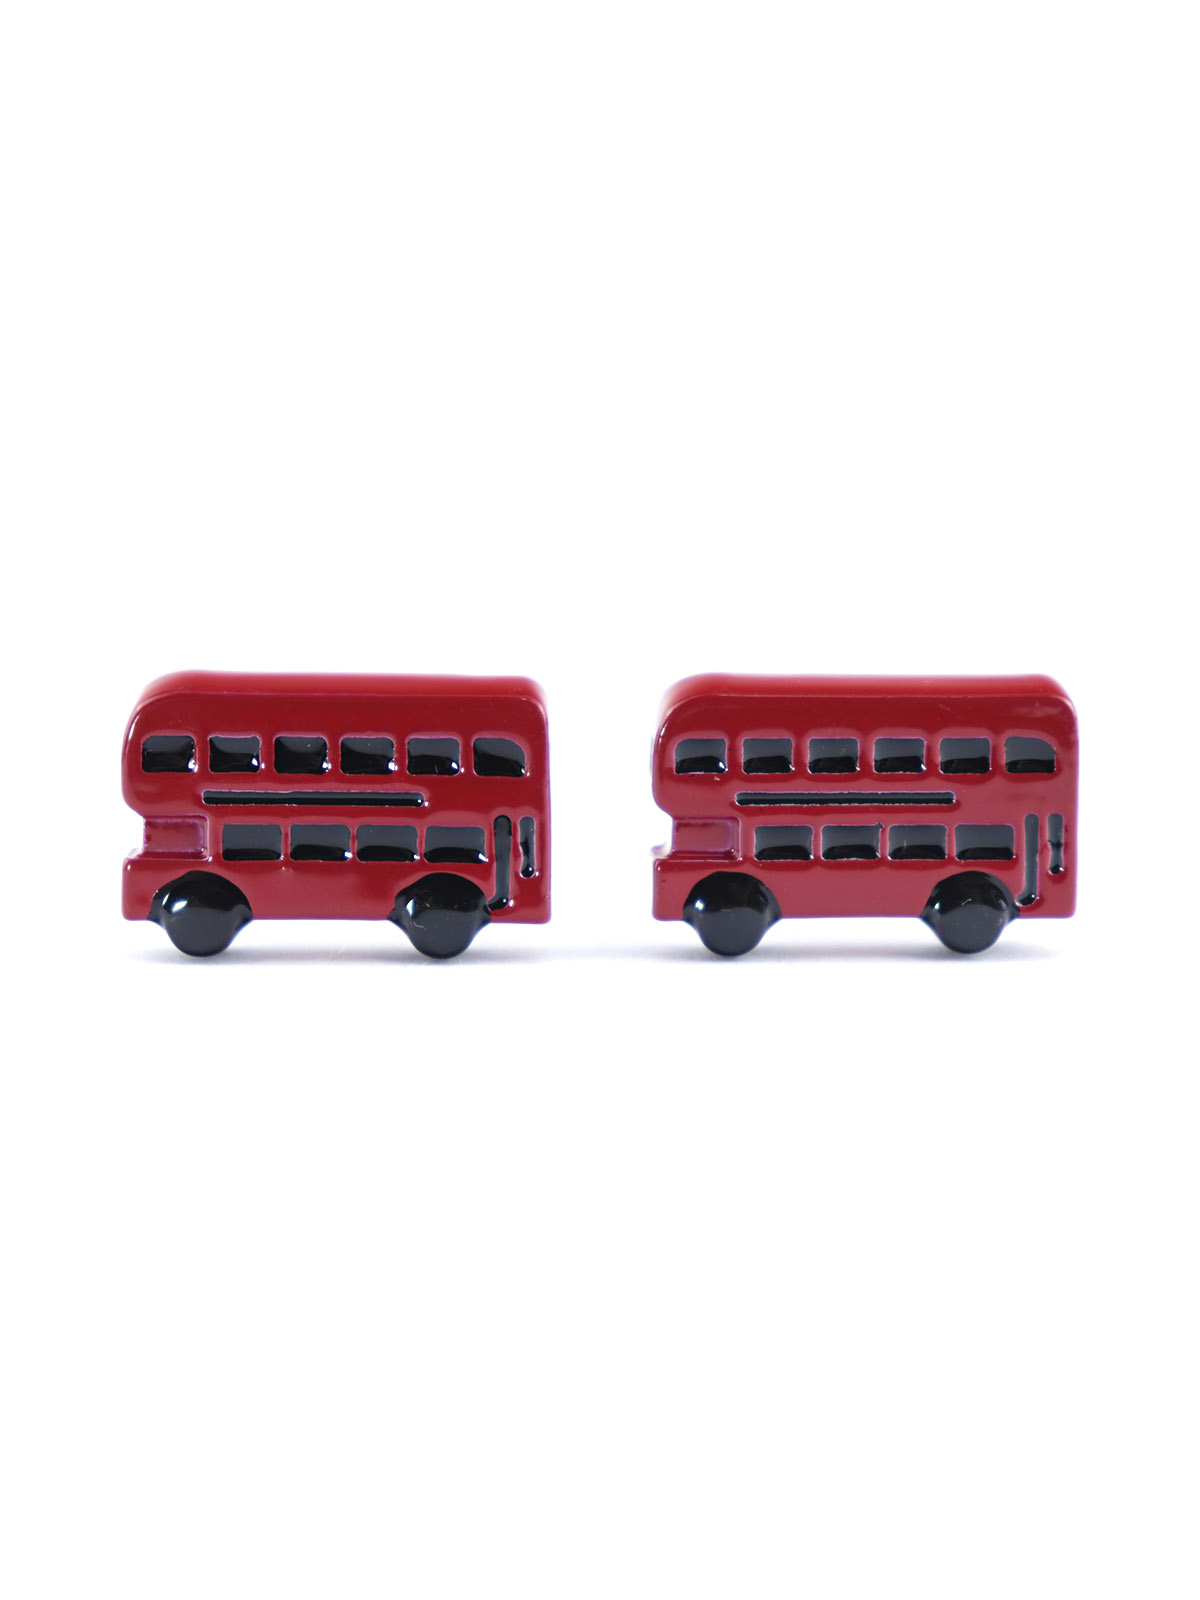 Запонки двухэтажный автобус, Материал: Ювелирная сталь 316L Покрытие - эмаль, Цвет: Красный, Размеры: 22 мм х 13 мм, вес: 15 гр., подарочная упаковка бесплатно.